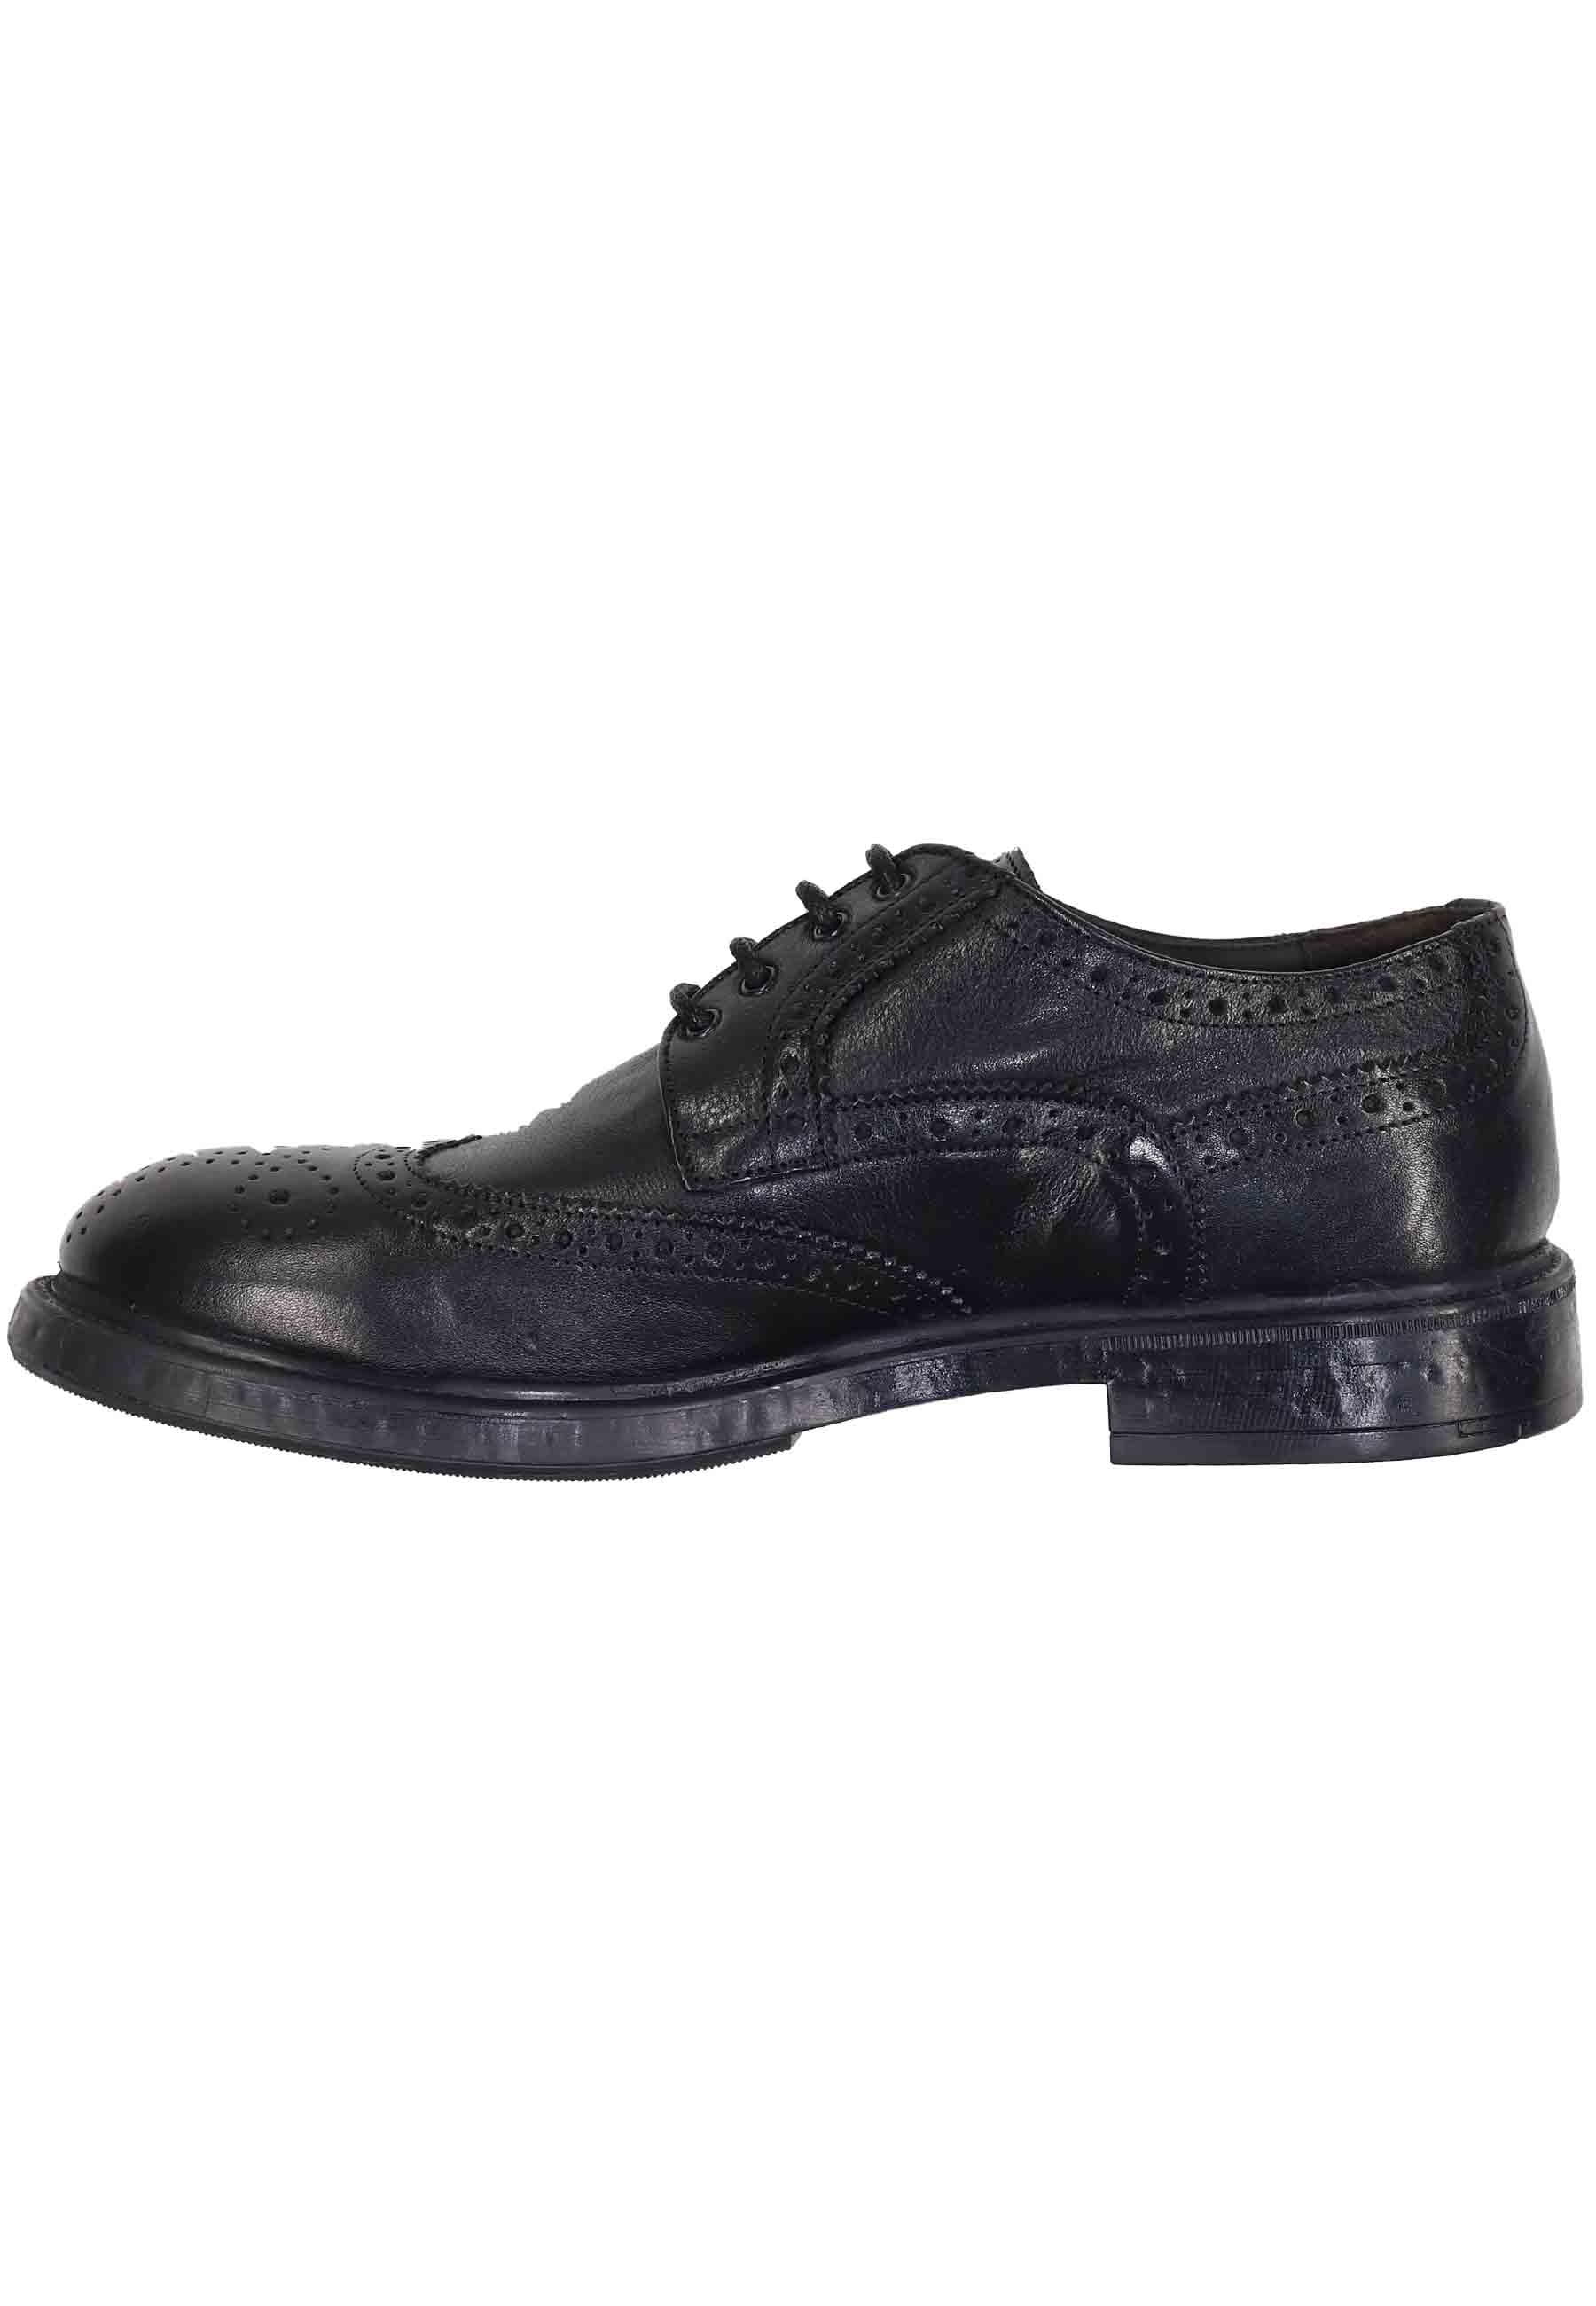 Chaussures à lacets pour hommes en cuir noir avec coutures anglaises et semelle en caoutchouc